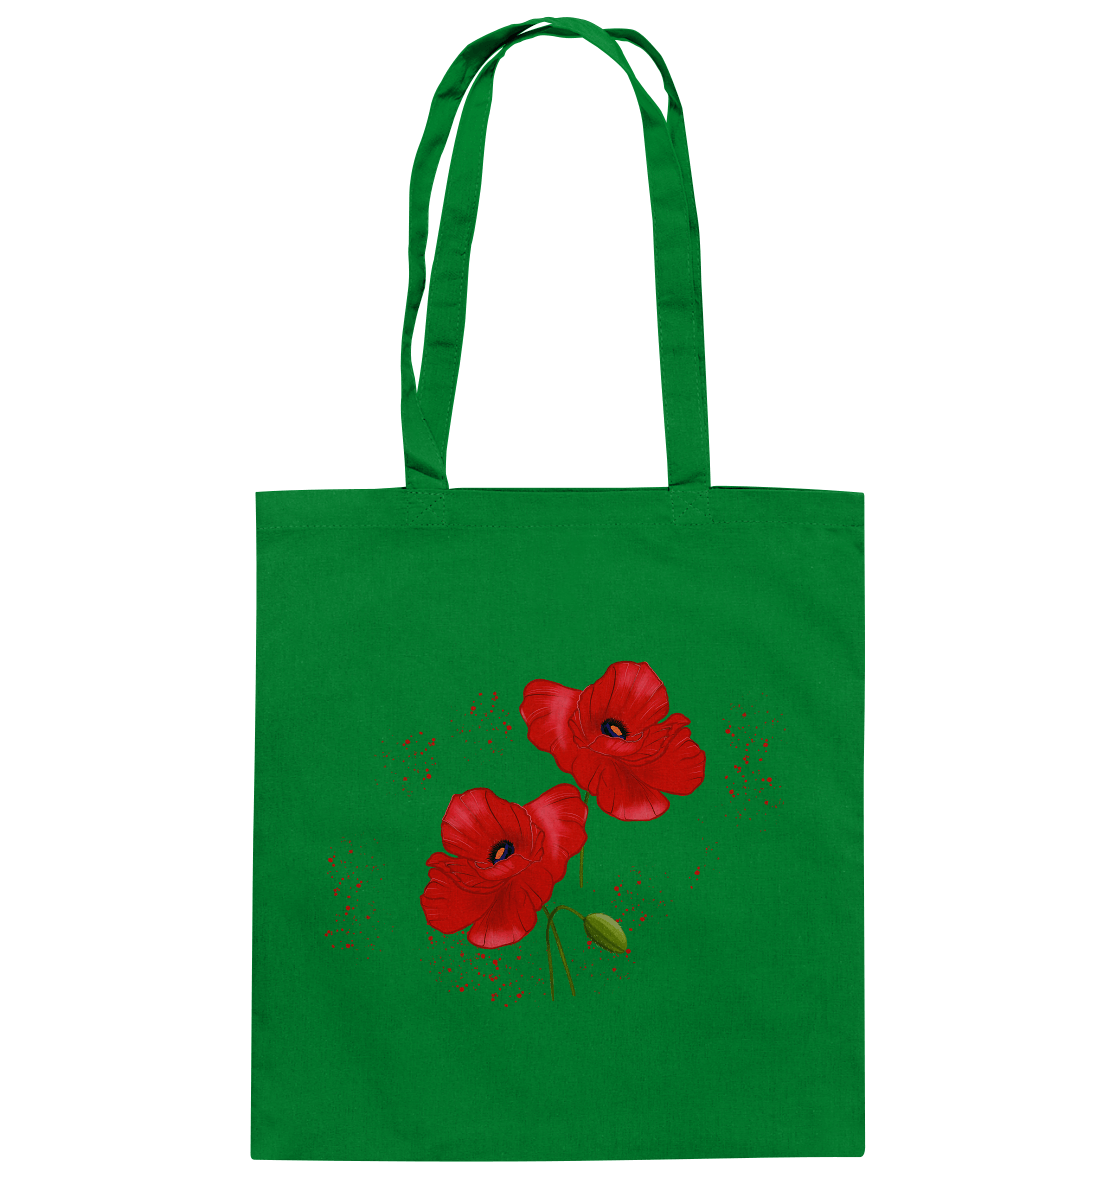 Poppy Bag Baumwolltasche in grün Kelly Green mit roten Mohnblumen